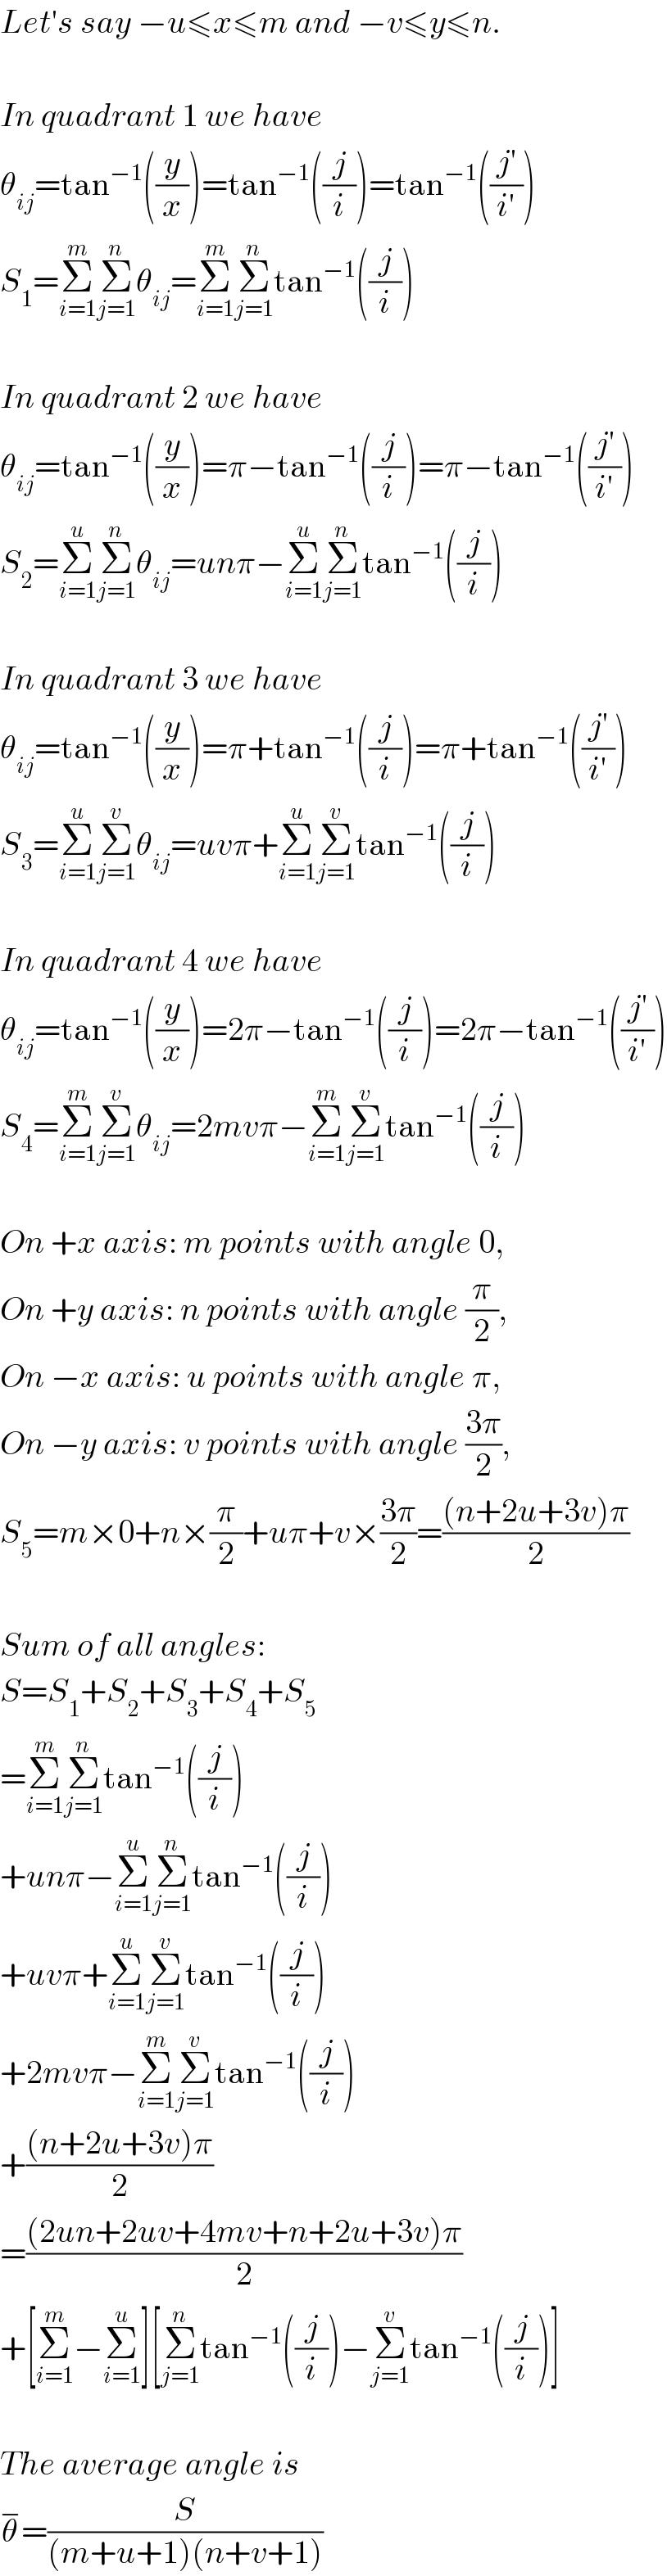 Let′s say −u≤x≤m and −v≤y≤n.    In quadrant 1 we have  θ_(ij) =tan^(−1) ((y/x))=tan^(−1) ((j/i))=tan^(−1) (((j′)/(i′)))  S_1 =Σ_(i=1) ^m Σ_(j=1) ^n θ_(ij) =Σ_(i=1) ^m Σ_(j=1) ^n tan^(−1) ((j/i))    In quadrant 2 we have  θ_(ij) =tan^(−1) ((y/x))=π−tan^(−1) ((j/i))=π−tan^(−1) (((j′)/(i′)))  S_2 =Σ_(i=1) ^u Σ_(j=1) ^n θ_(ij) =unπ−Σ_(i=1) ^u Σ_(j=1) ^n tan^(−1) ((j/i))    In quadrant 3 we have  θ_(ij) =tan^(−1) ((y/x))=π+tan^(−1) ((j/i))=π+tan^(−1) (((j′)/(i′)))  S_3 =Σ_(i=1) ^u Σ_(j=1) ^v θ_(ij) =uvπ+Σ_(i=1) ^u Σ_(j=1) ^v tan^(−1) ((j/i))    In quadrant 4 we have  θ_(ij) =tan^(−1) ((y/x))=2π−tan^(−1) ((j/i))=2π−tan^(−1) (((j′)/(i′)))  S_4 =Σ_(i=1) ^m Σ_(j=1) ^v θ_(ij) =2mvπ−Σ_(i=1) ^m Σ_(j=1) ^v tan^(−1) ((j/i))    On +x axis: m points with angle 0,  On +y axis: n points with angle (π/2),  On −x axis: u points with angle π,  On −y axis: v points with angle ((3π)/2),  S_5 =m×0+n×(π/2)+uπ+v×((3π)/2)=(((n+2u+3v)π)/2)    Sum of all angles:  S=S_1 +S_2 +S_3 +S_4 +S_5   =Σ_(i=1) ^m Σ_(j=1) ^n tan^(−1) ((j/i))  +unπ−Σ_(i=1) ^u Σ_(j=1) ^n tan^(−1) ((j/i))  +uvπ+Σ_(i=1) ^u Σ_(j=1) ^v tan^(−1) ((j/i))  +2mvπ−Σ_(i=1) ^m Σ_(j=1) ^v tan^(−1) ((j/i))  +(((n+2u+3v)π)/2)  =(((2un+2uv+4mv+n+2u+3v)π)/2)  +[Σ_(i=1) ^m −Σ_(i=1) ^u ][Σ_(j=1) ^n tan^(−1) ((j/i))−Σ_(j=1) ^v tan^(−1) ((j/i))]    The average angle is  θ^− =(S/((m+u+1)(n+v+1)))  